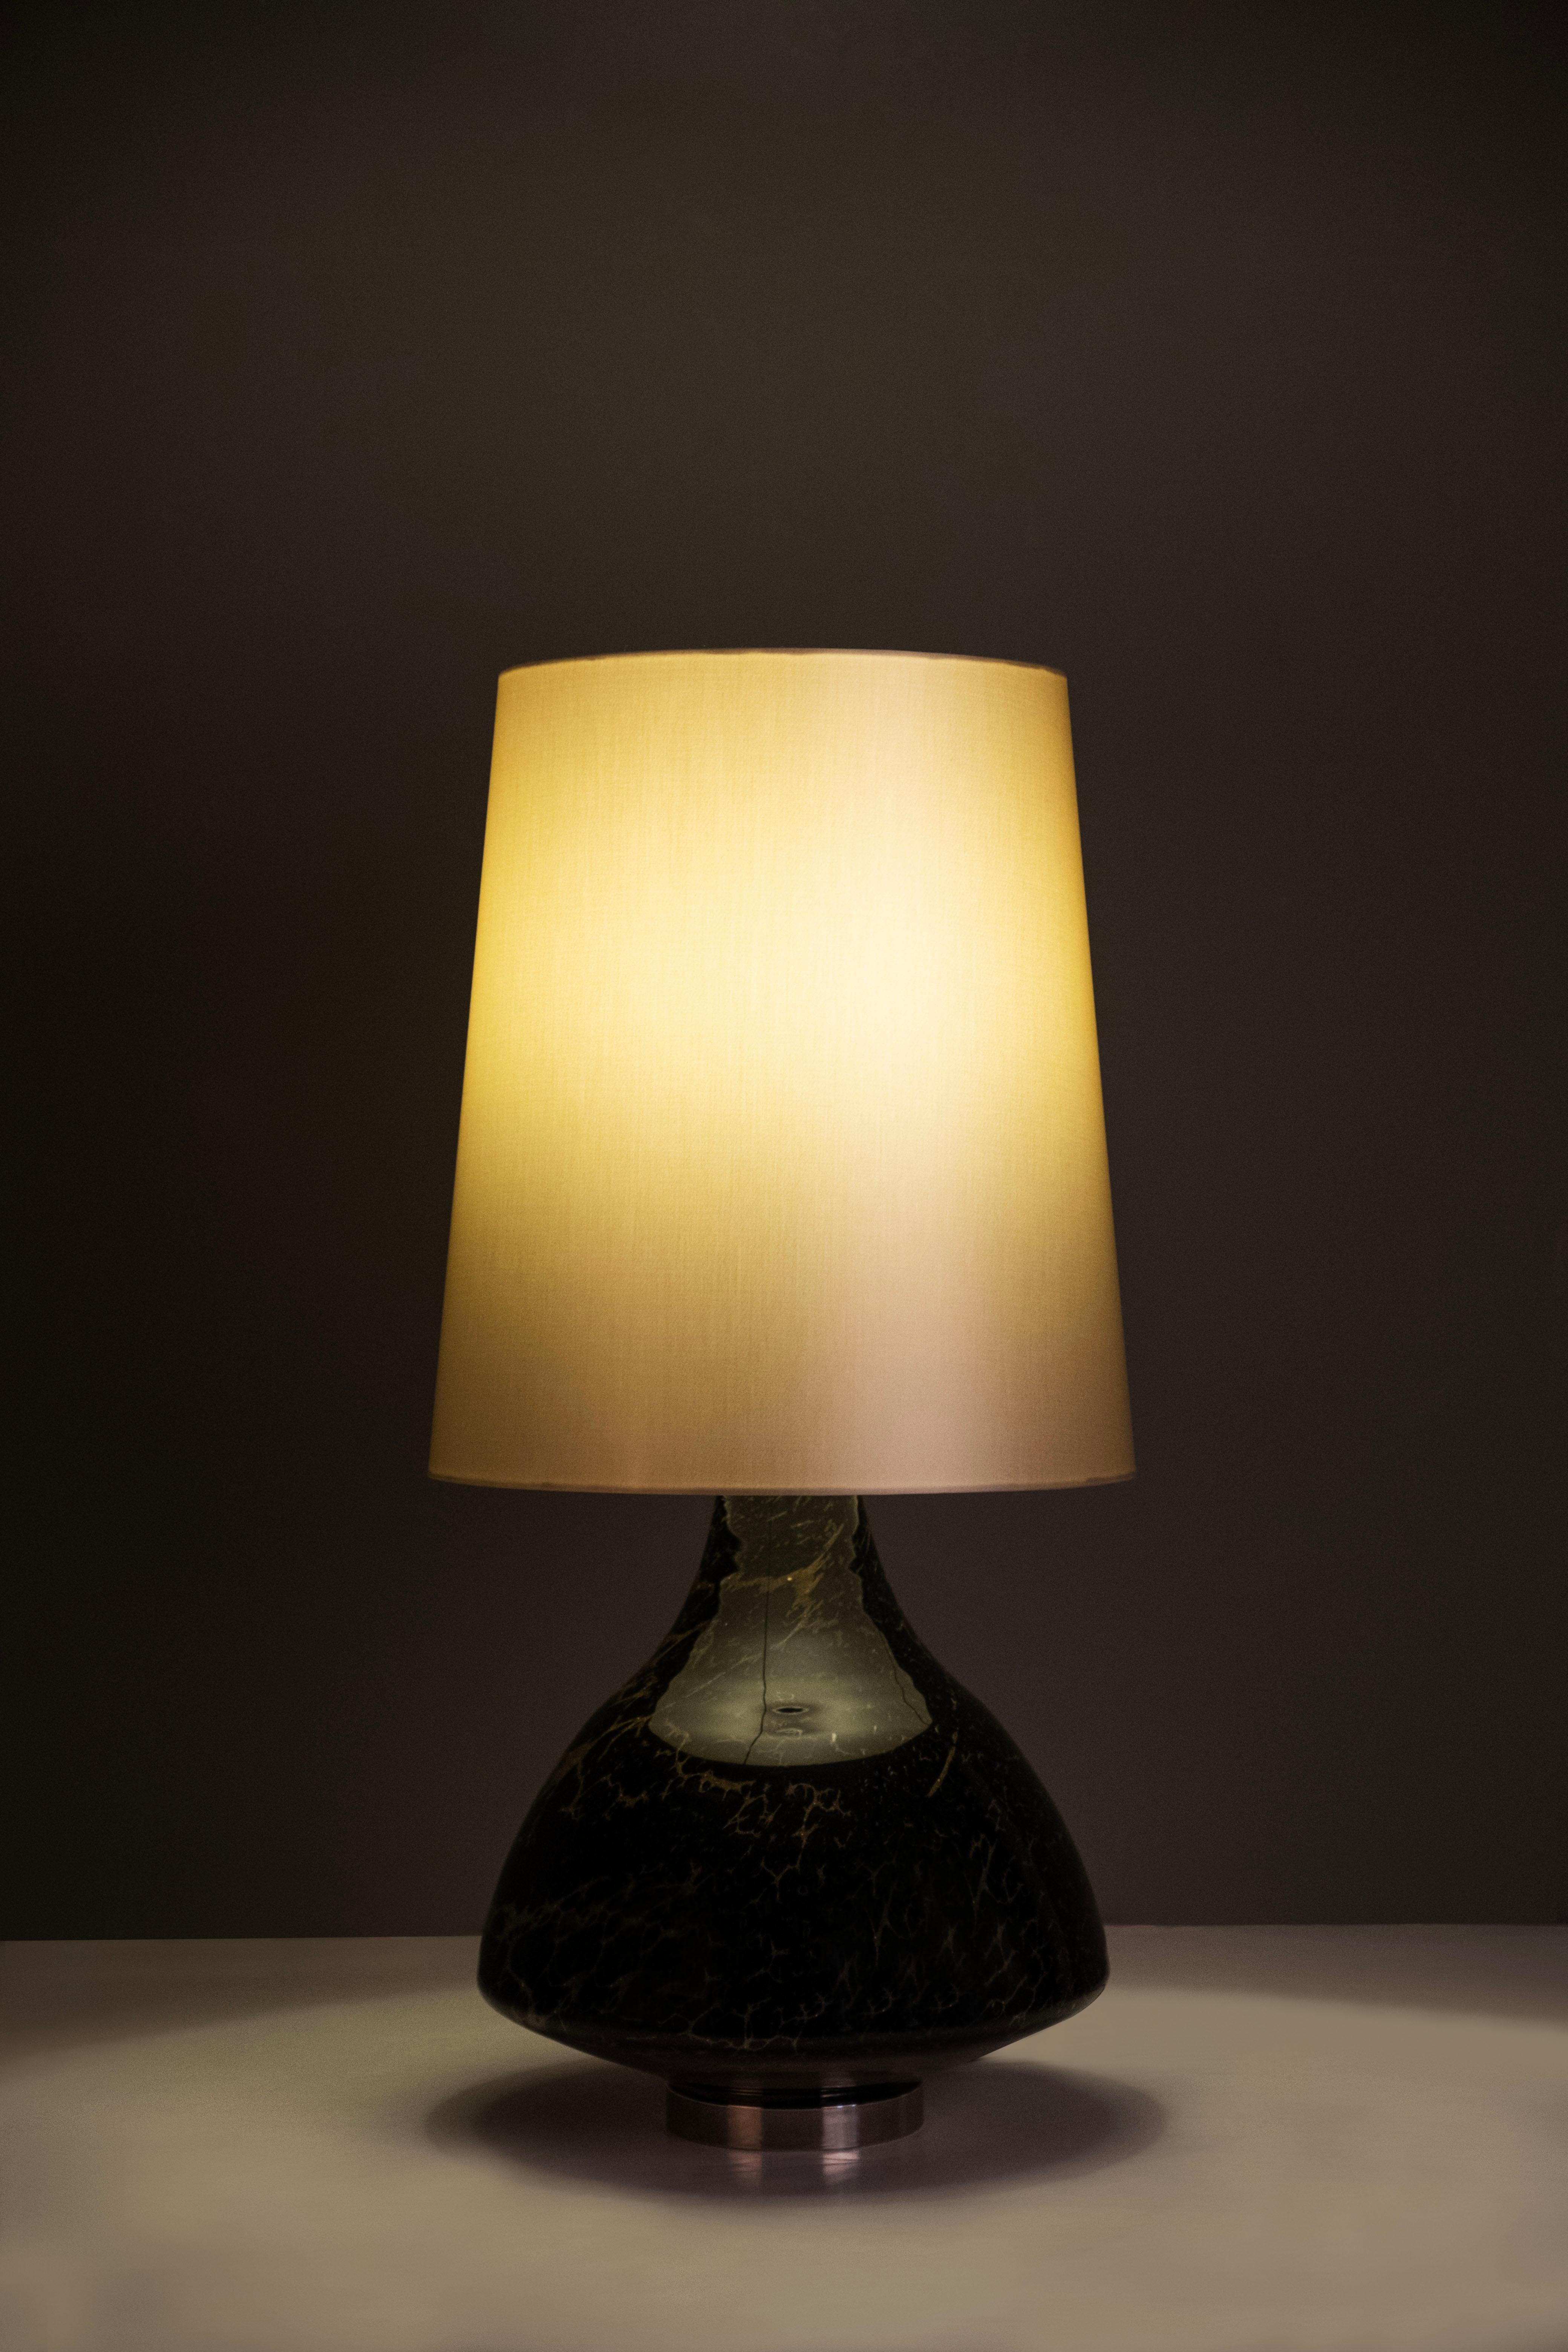 Lot de 2 lampes de table Luso, Collection S, fabriquées à la main au Portugal - Europe par GF Modern.

Luso est une lampe de table élégante et un complément attrayant pour une maison moderne. Le verre transparent et l'acier inoxydable poli se